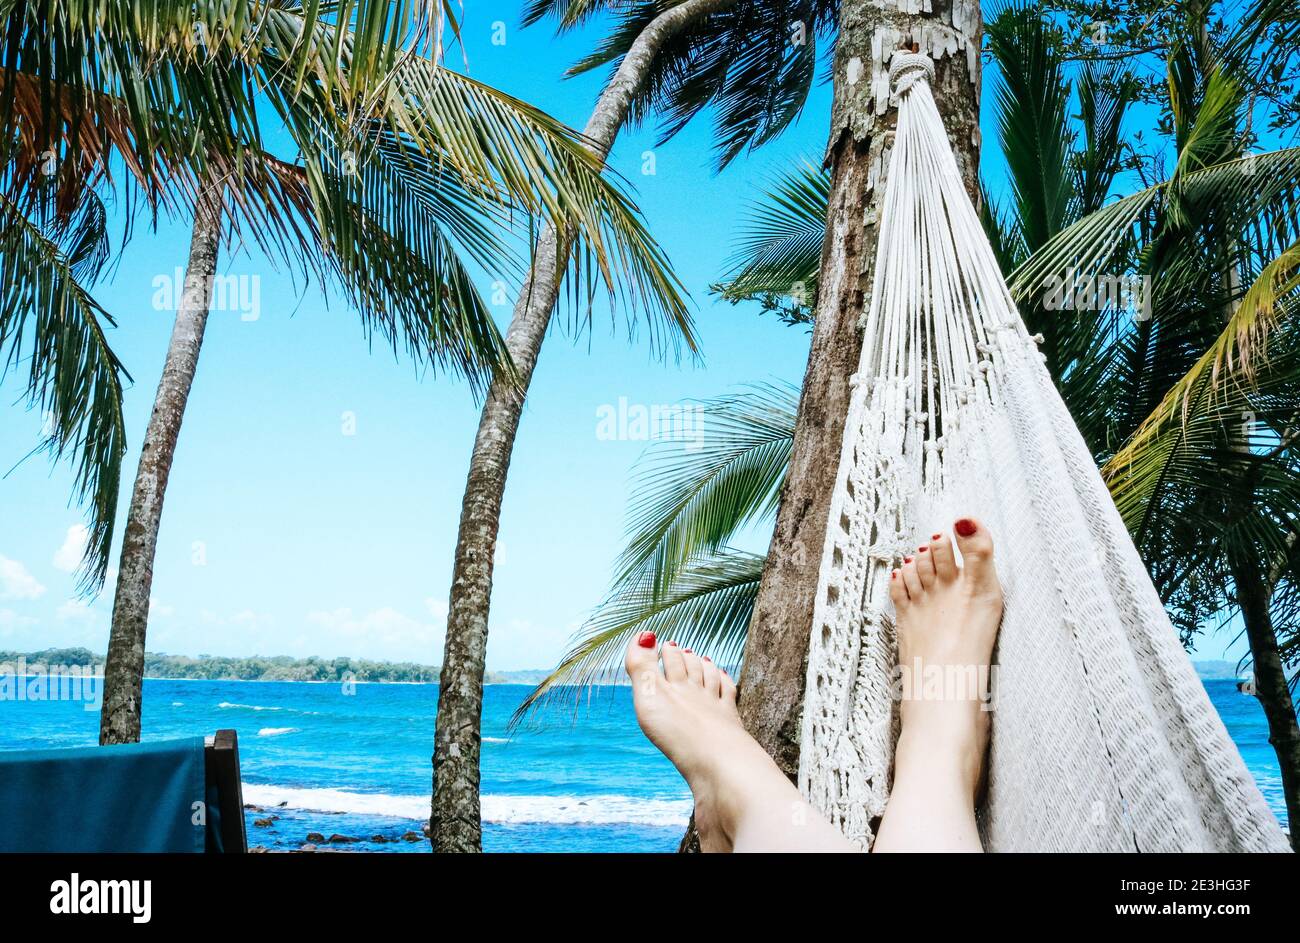 Frau, die sich in einer Hängematte am Strand auf einem entspannt karibische Insel umgeben von Palmen Stockfoto